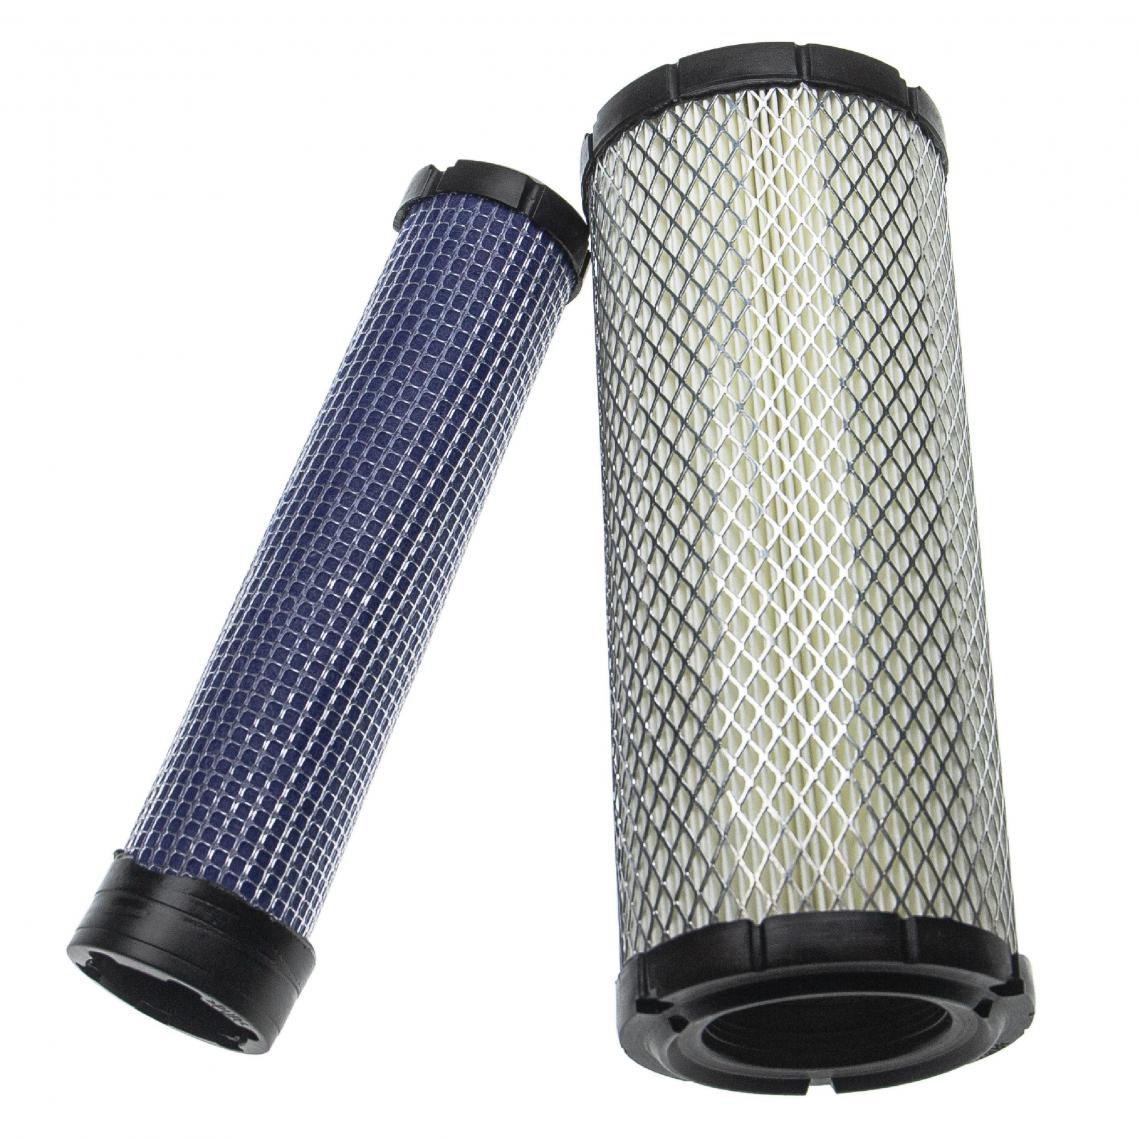 Vhbw - vhbw Lot de filtres compatible avec Kubota L4240HSTC3, L4300DT, L4300F, L4310DT, L4310DTGST engin de chantier; 1x filtre interne, 1x filtre extérieur - Autre appareil de mesure